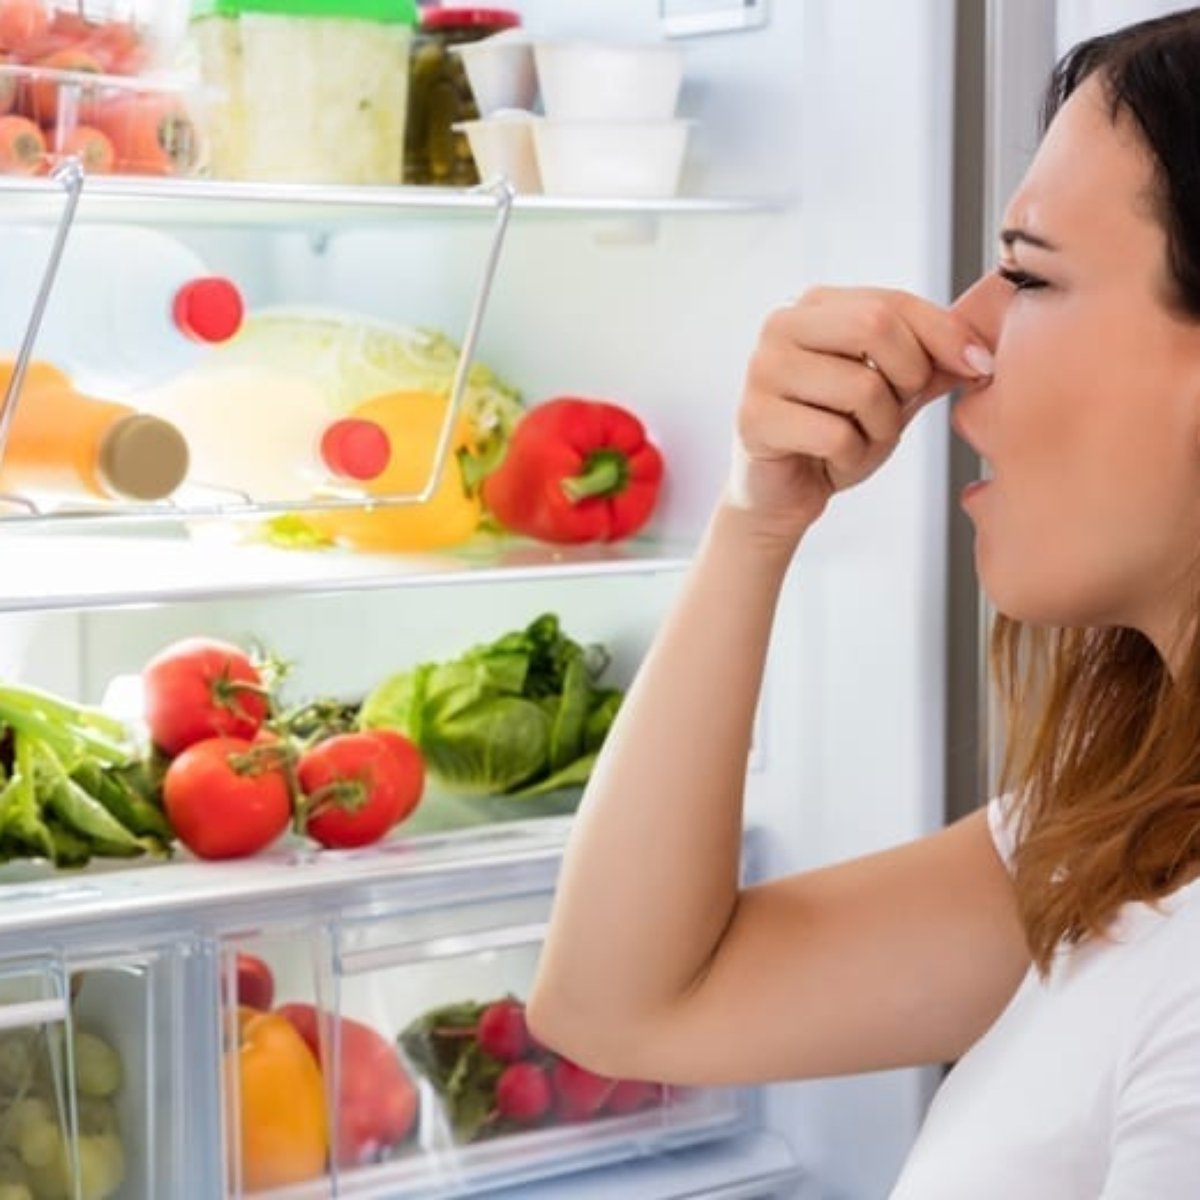 Como manter a geladeira livre de mau cheiro? Confira dicas muito simples que vão te surpreender